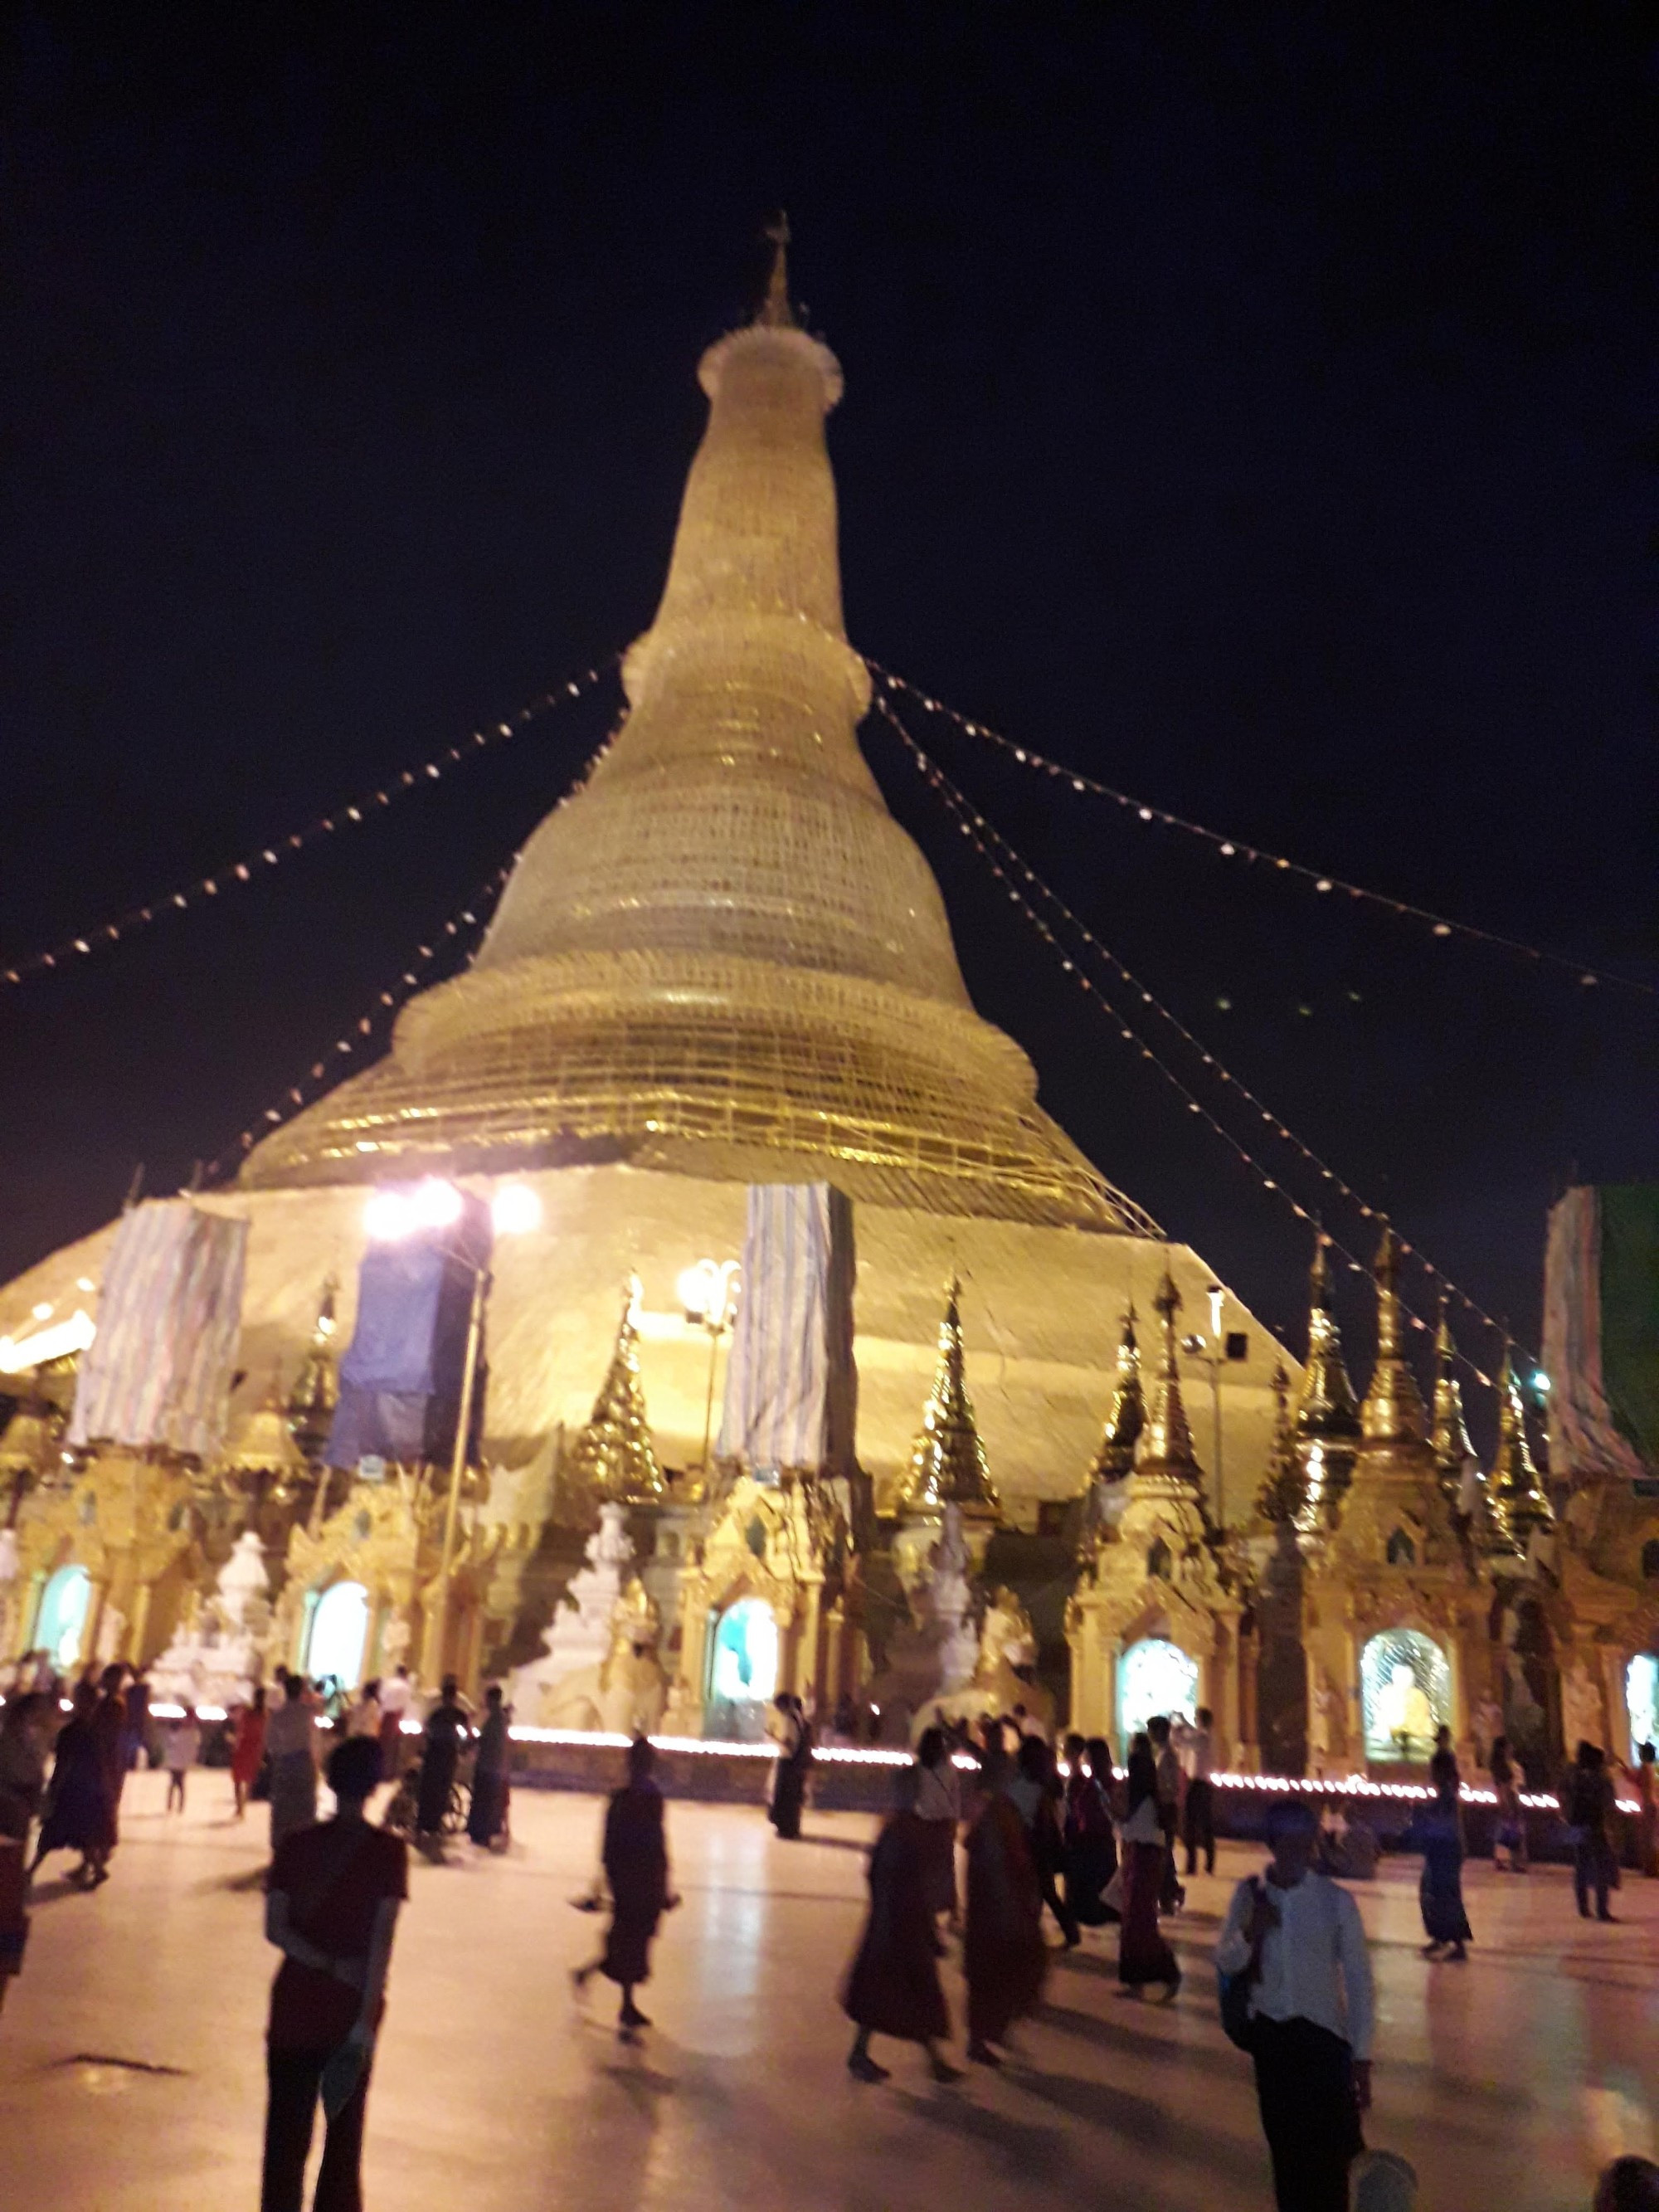 Swedagon Pagoda, Yangon, at night